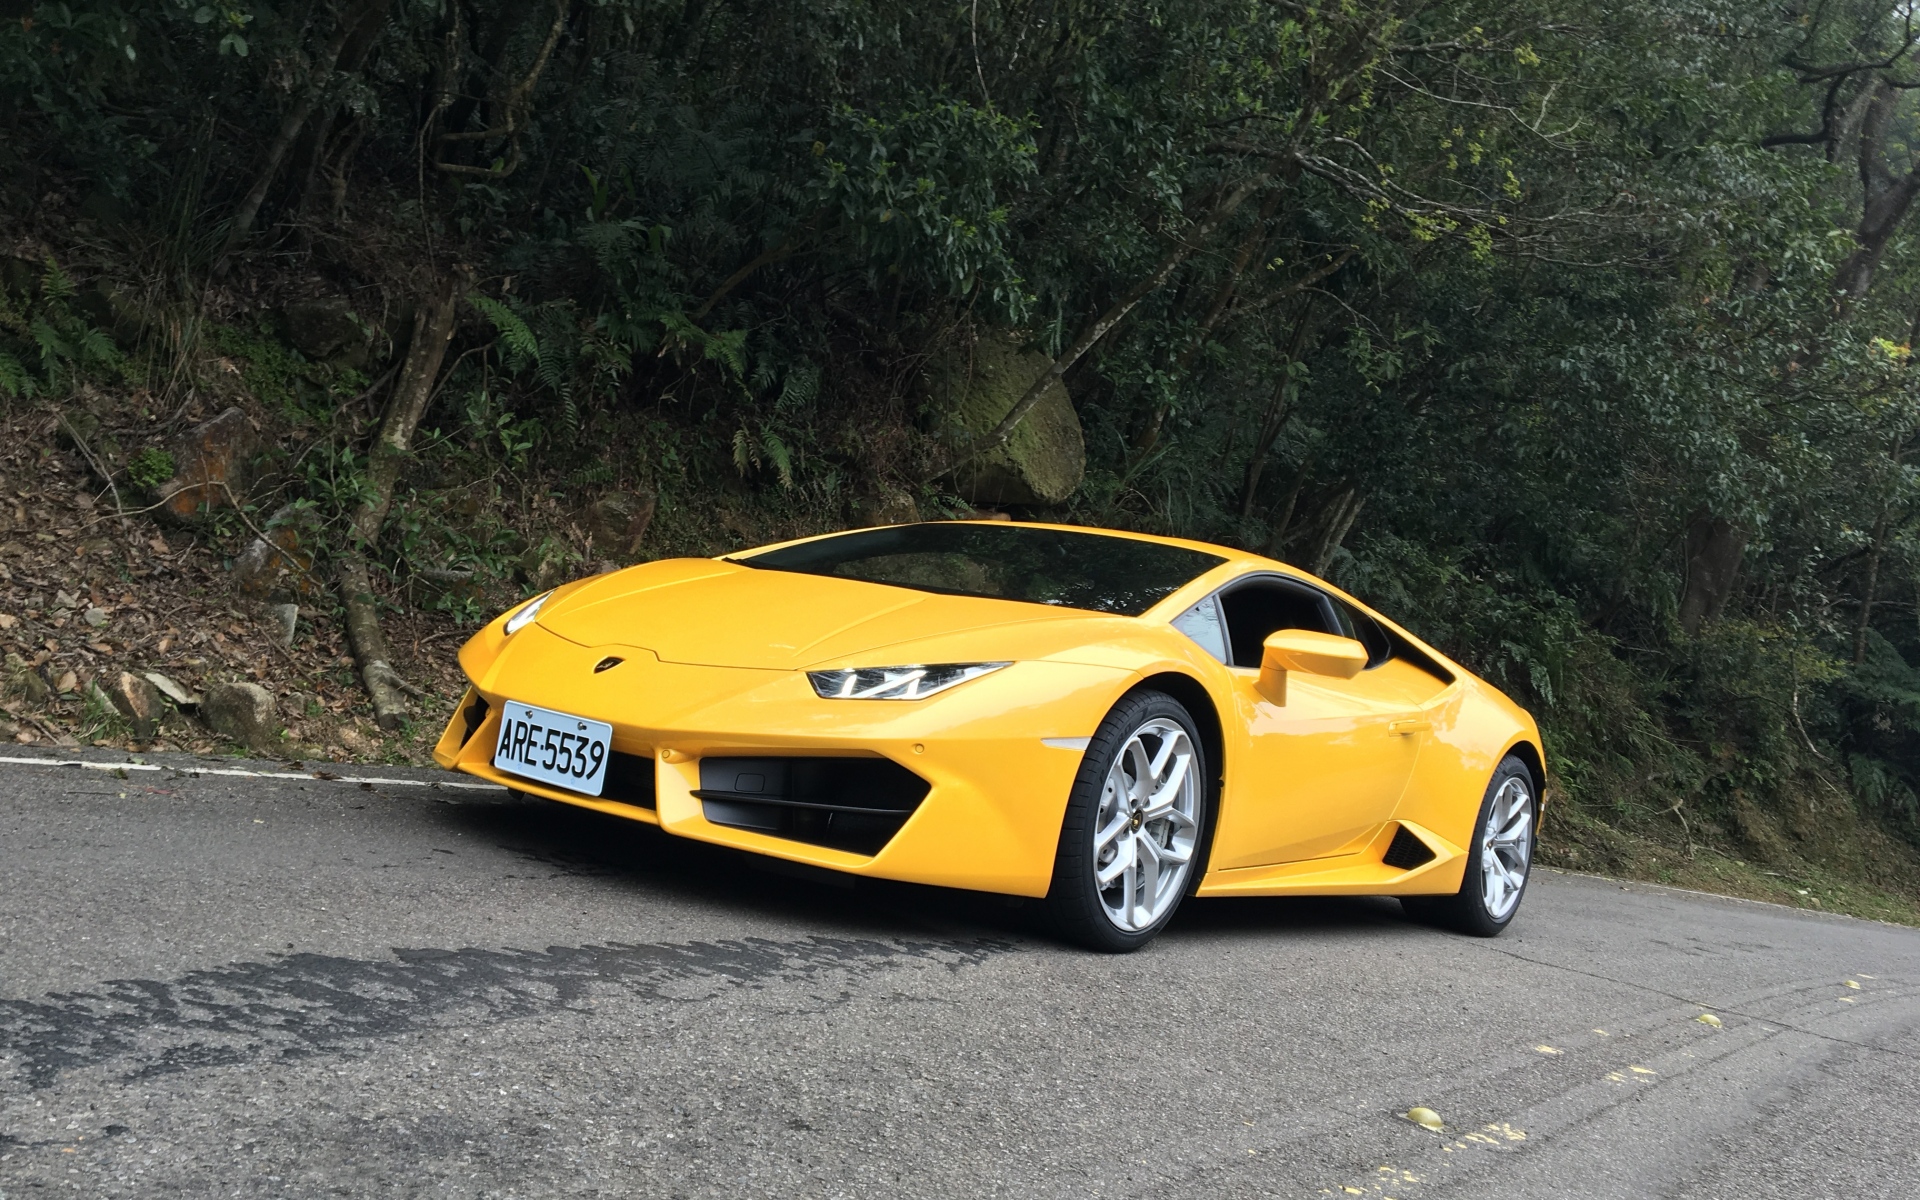 Картинки Lamborghini, спортивный автомобиль, вид сбоку, желтый фото и обои на рабочий стол